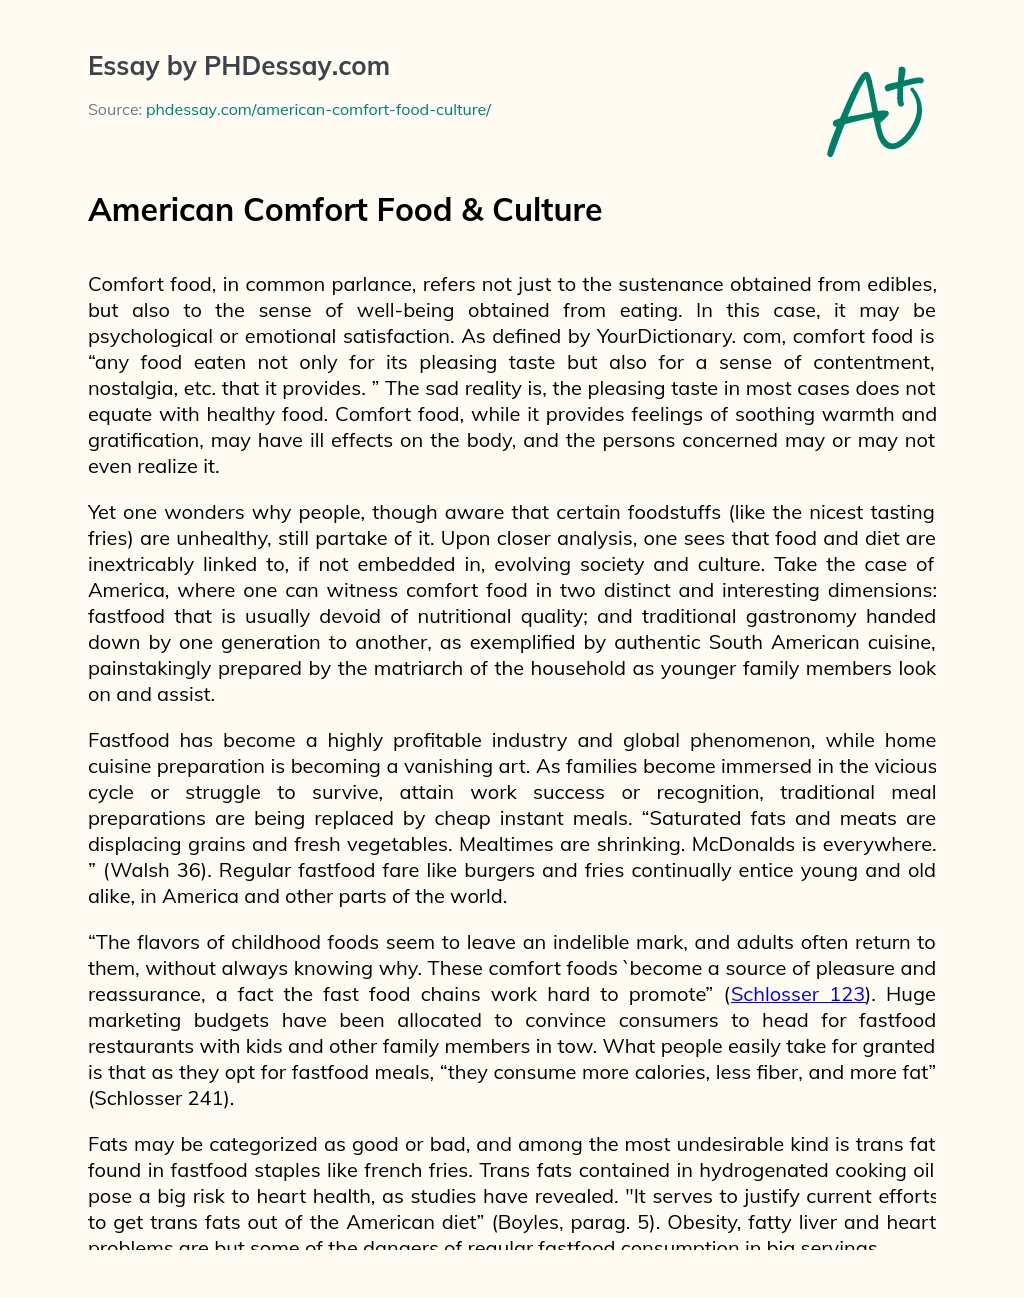 American Comfort Food & Culture essay